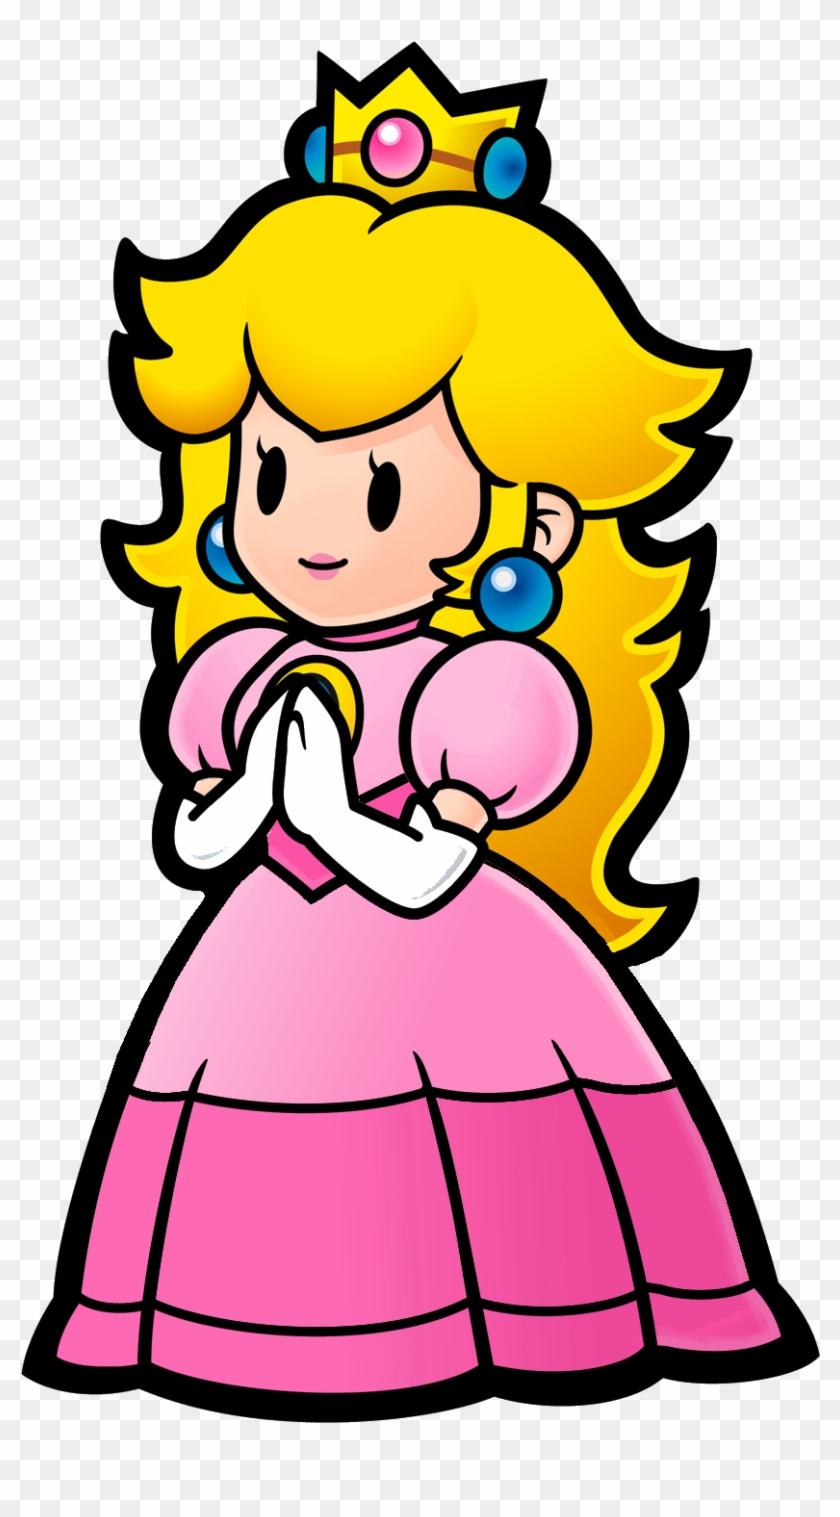 Princess Peach Clipart Vector Princess Peach Paper Mario Free